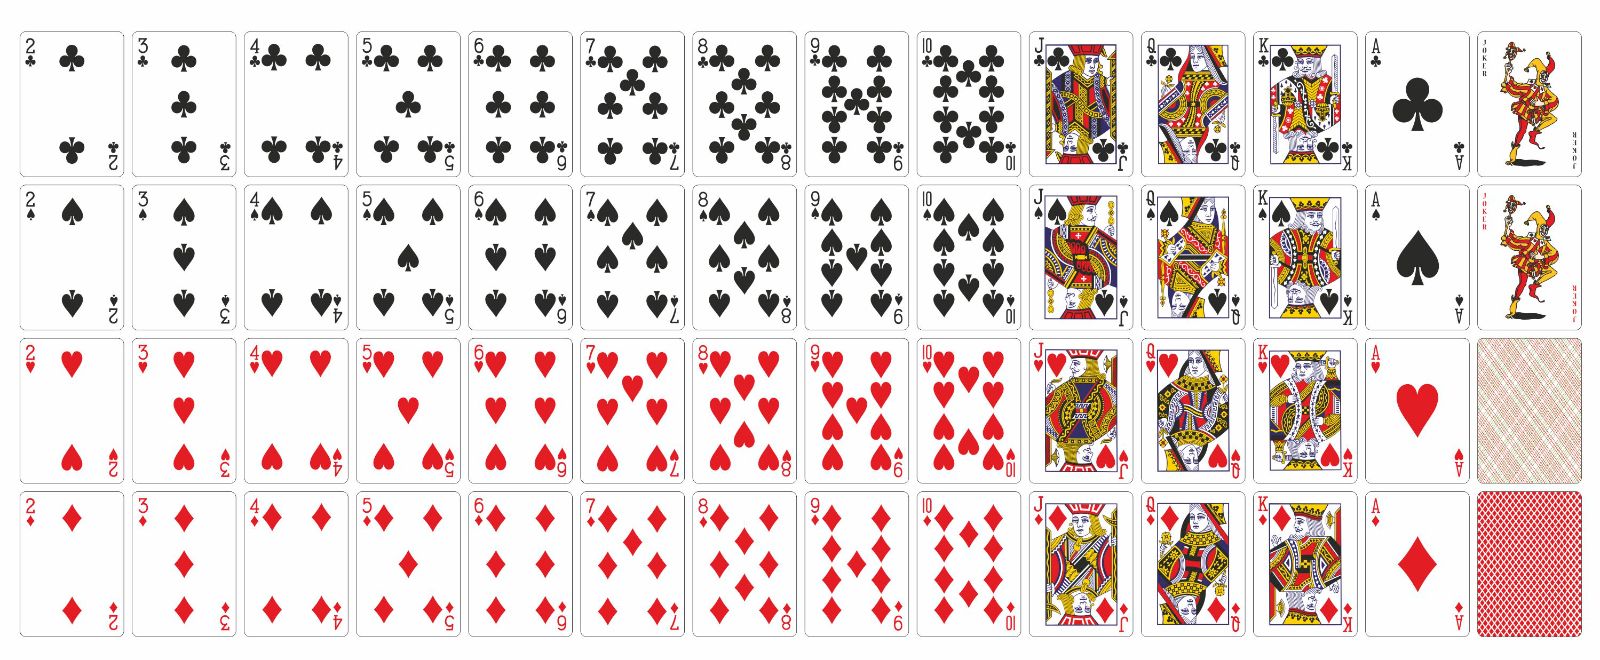 Как называются игральные карты. Карты Геншин, колода 54 карты. Карточная колода 52 карты. Покер колода 52 карты. Распечатка игровых карт.